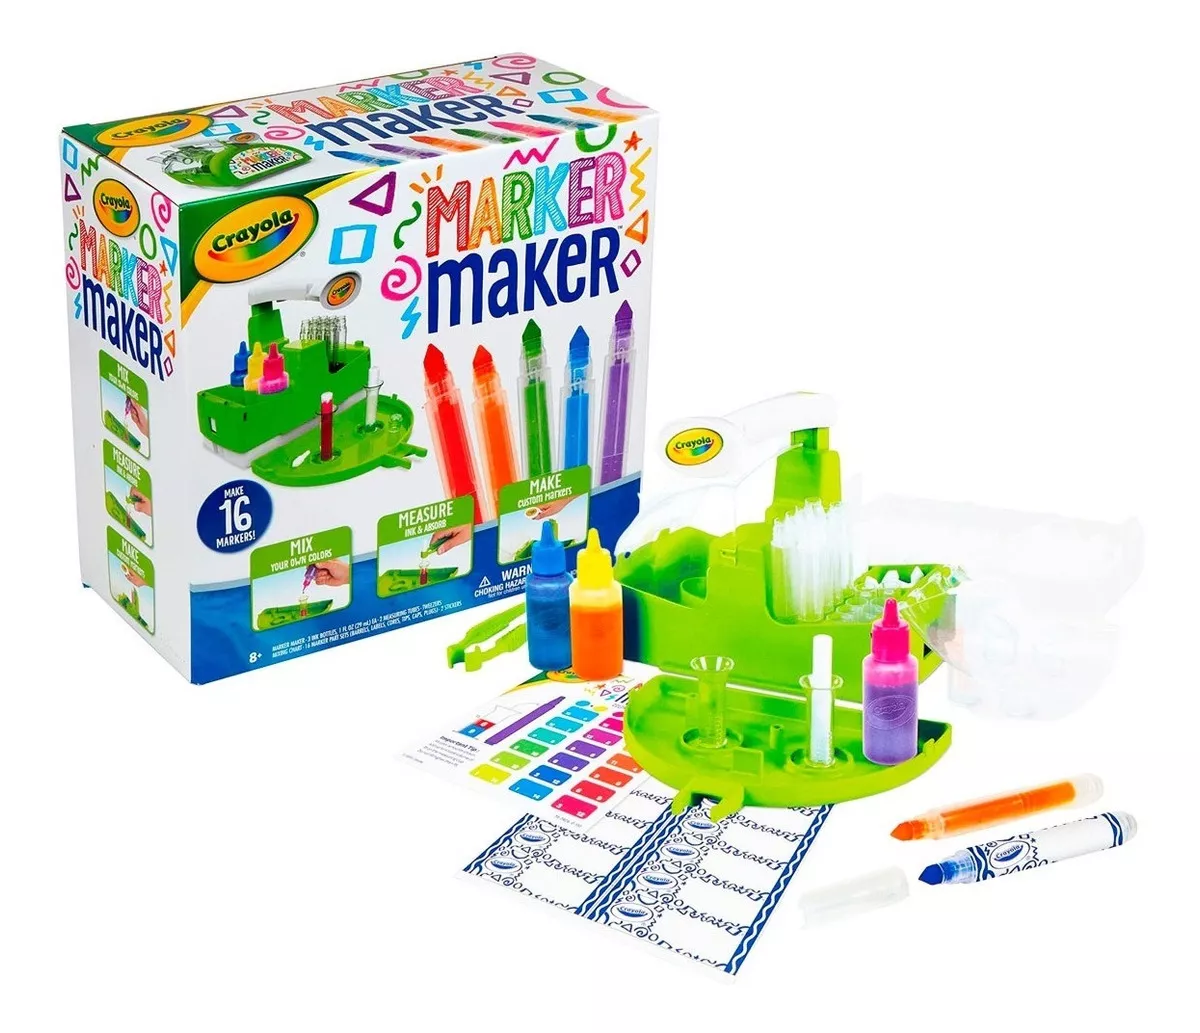 Primera imagen para búsqueda de crayola marker maker